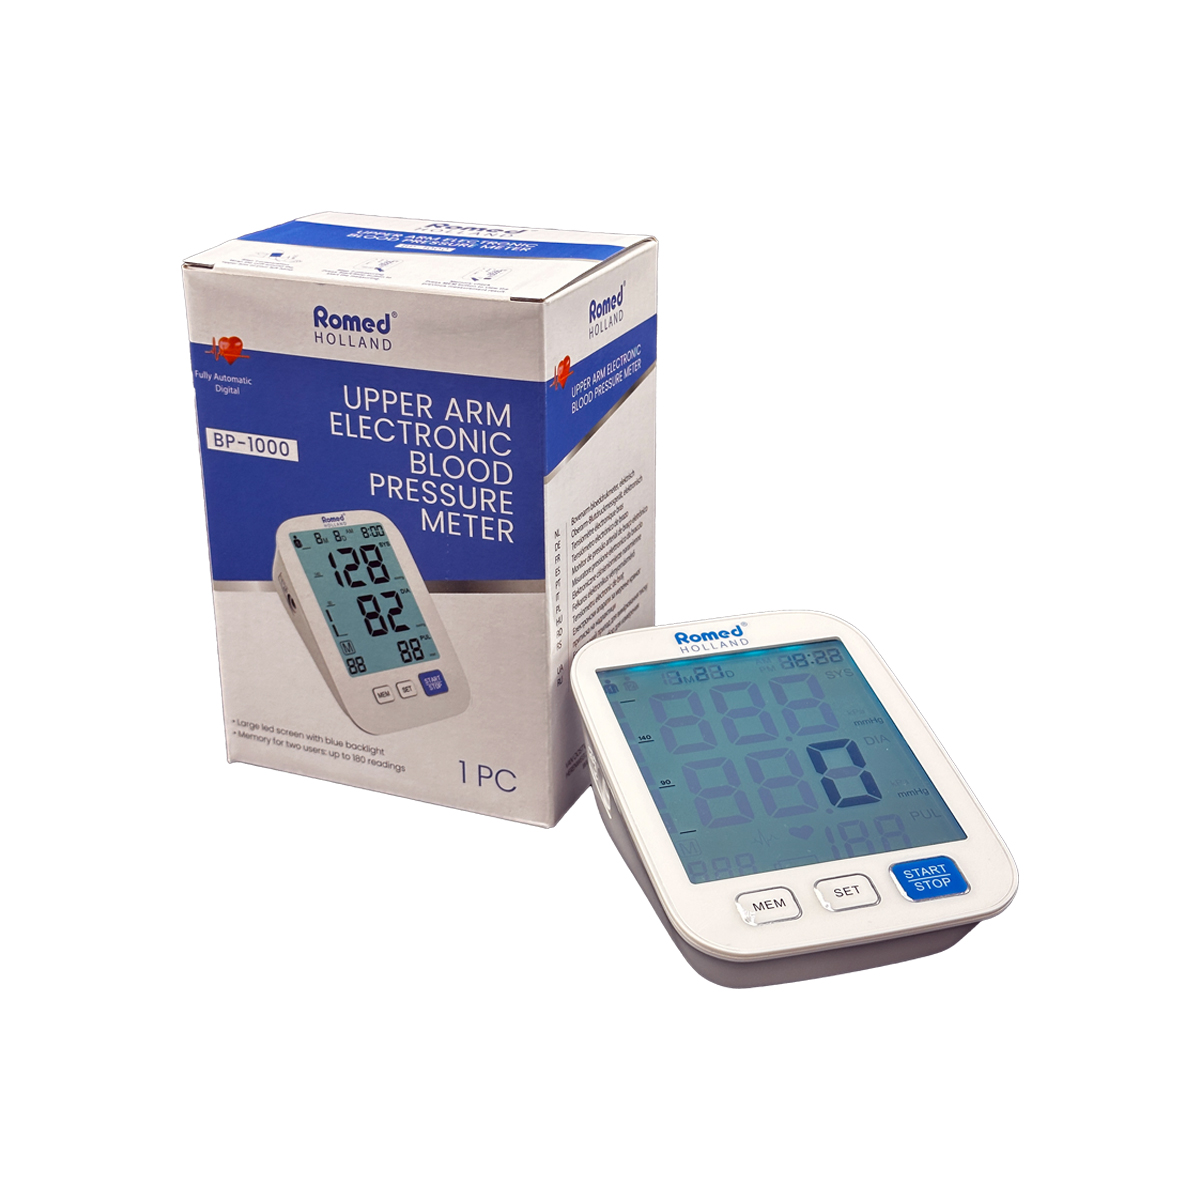 BP-1000 Misuratori di pressione sanguigna Romed, completamente automatici, elettronici, per pezzo in una scatola interna, 10 pz per collo.